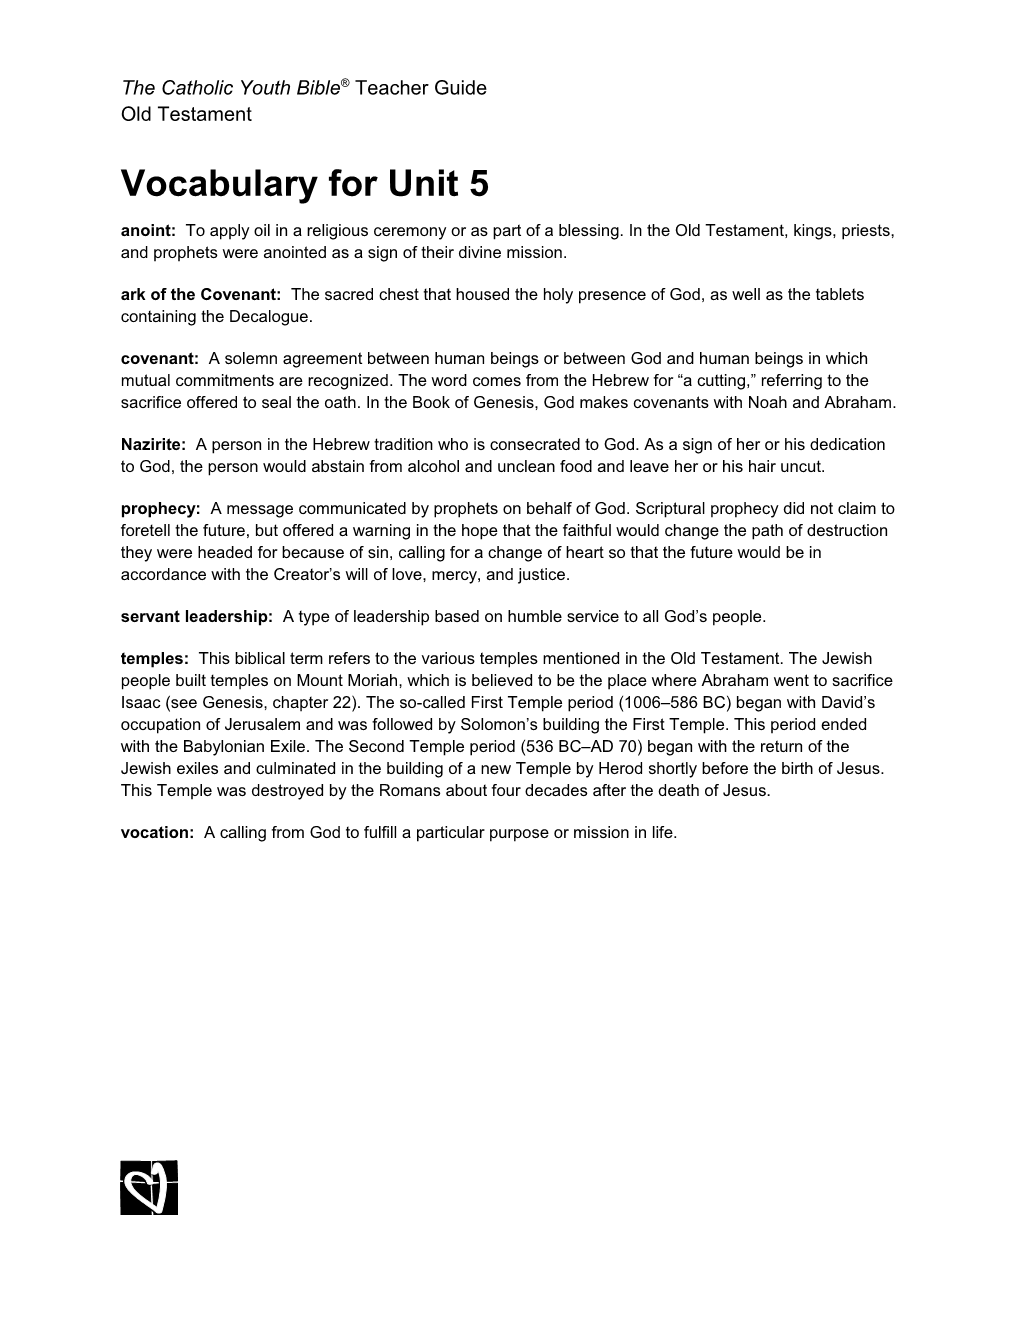 (H-BH) Vocabulary for Unit 4